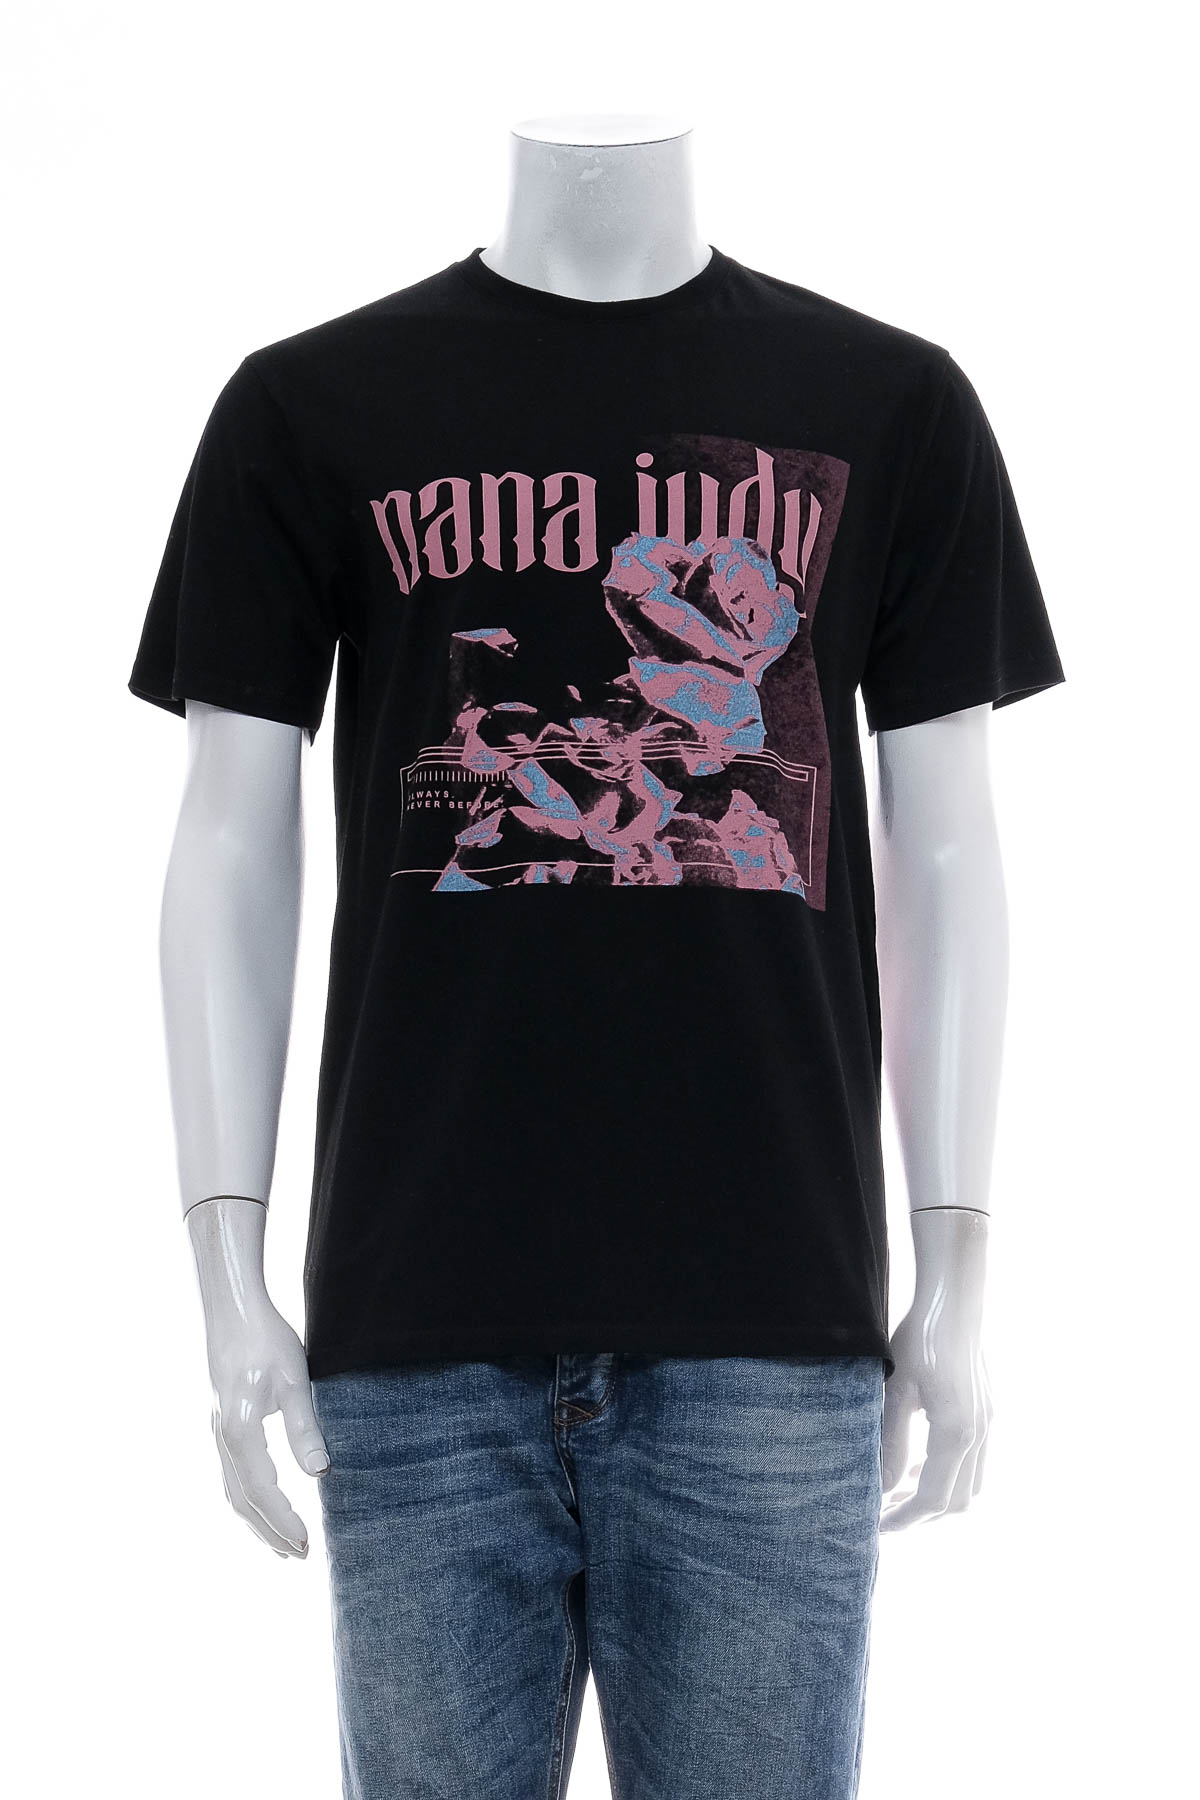 Αντρική μπλούζα - Nana Judy - 0